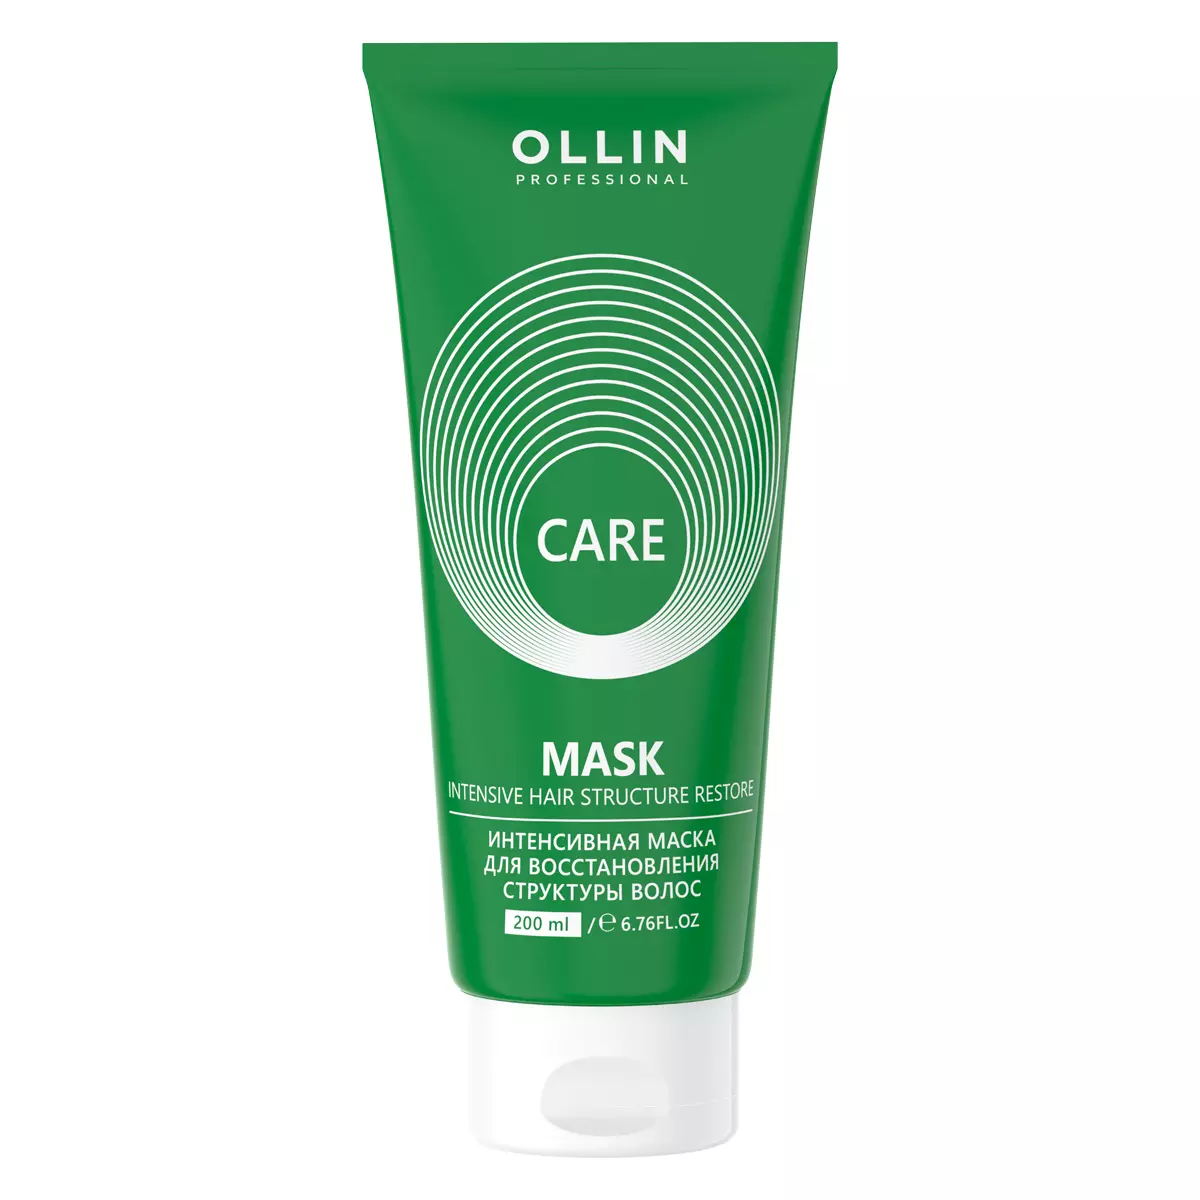 Ollin Professional Care Маска интенсивная для восстановления структуры волос, 200мл